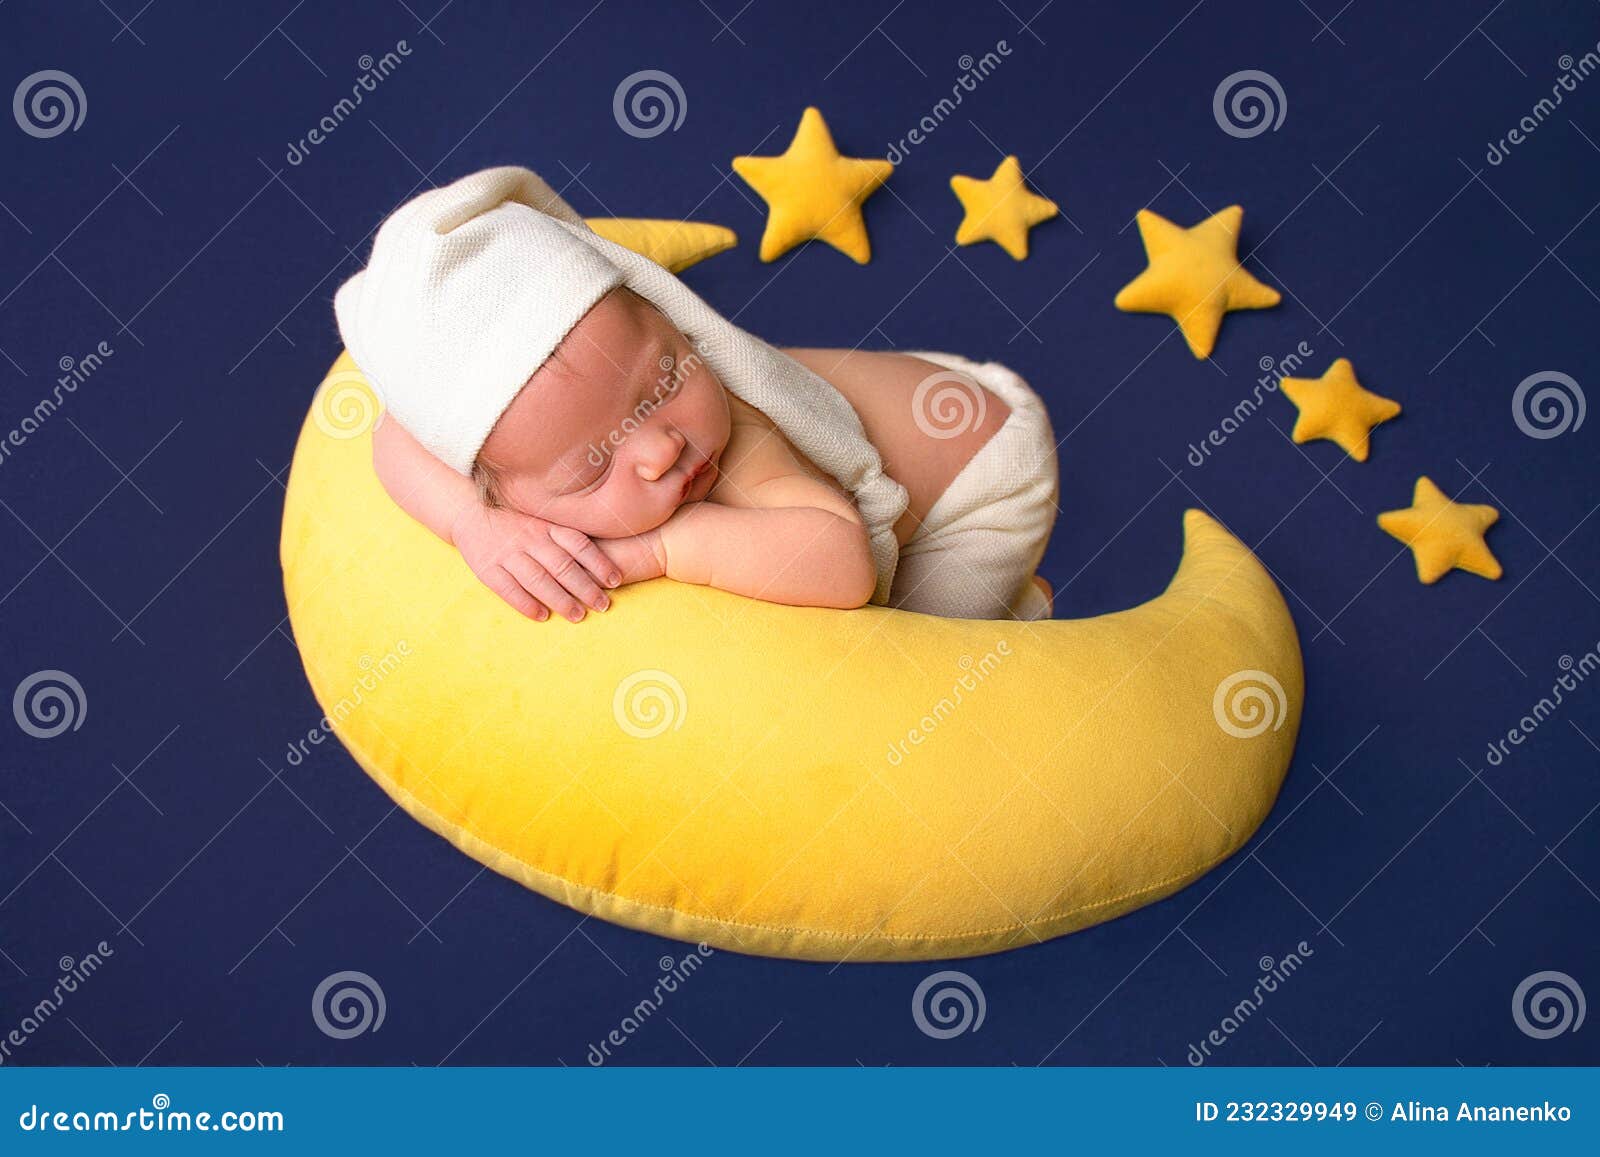 Bebé Recién Nacido Con Un Disfraz Bebé Niños Foto Bebés Bebés Lindos Fotos  De Recién Nacidos Imagen de archivo - Imagen de amarillo, newborn: 232329949